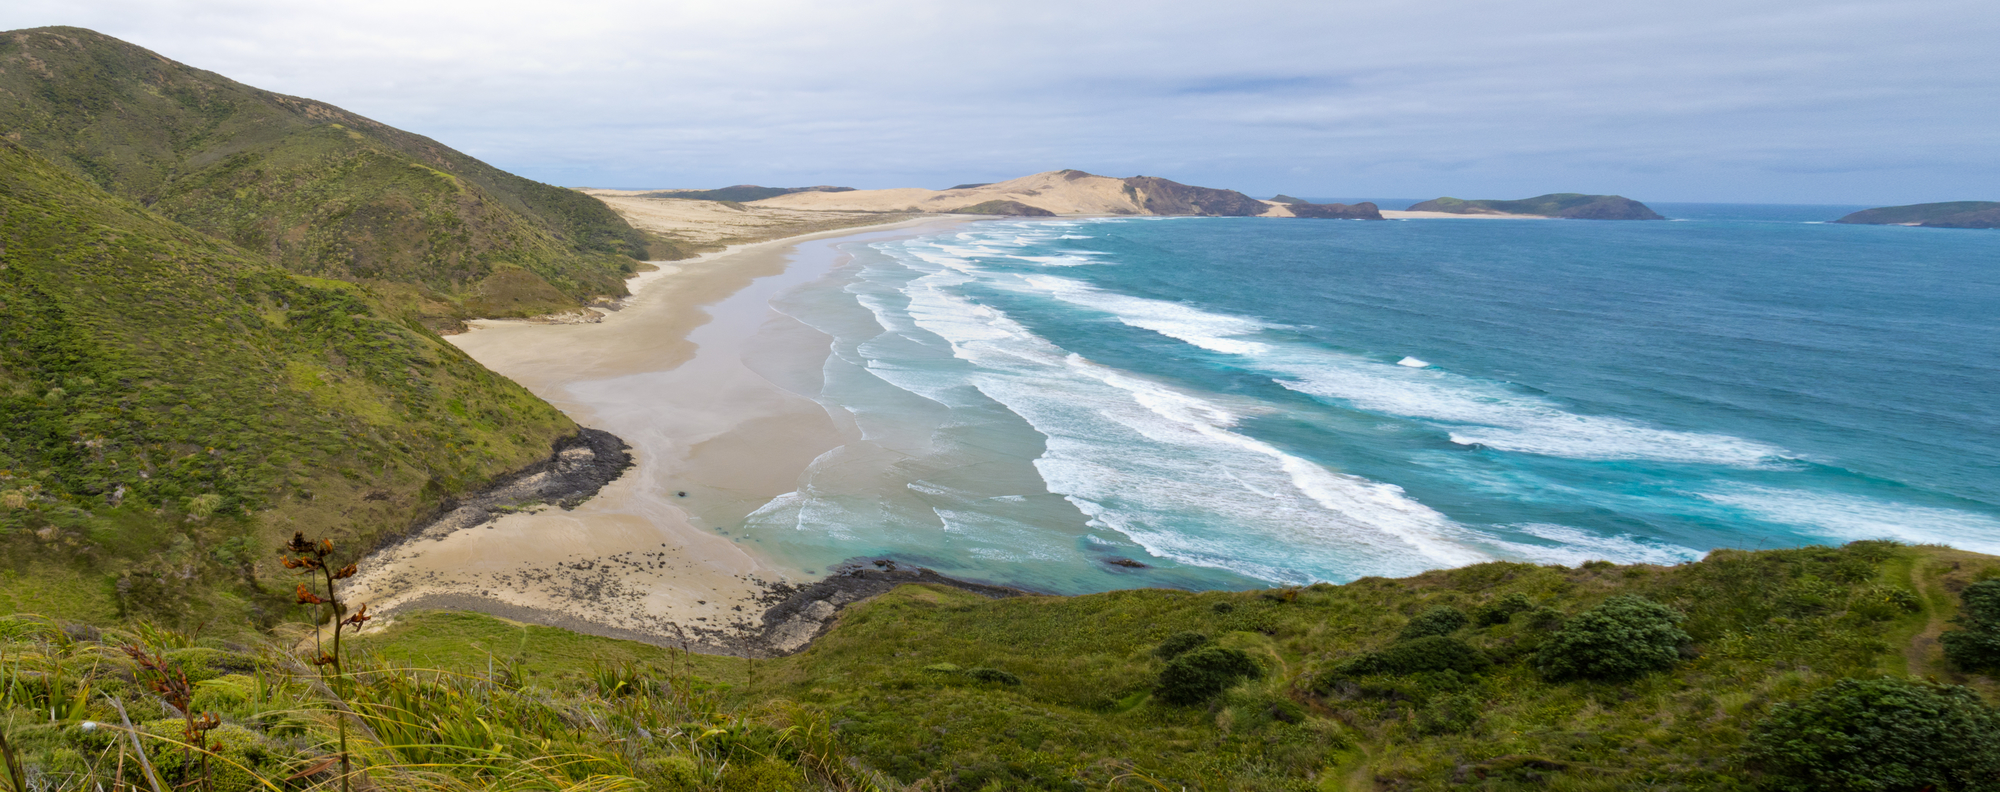 Einsamer Sandstrand zwischen Cape Reinga und Cape Maria van Diemen am nördlichen Zipfel der Nordinsel Neuseelands